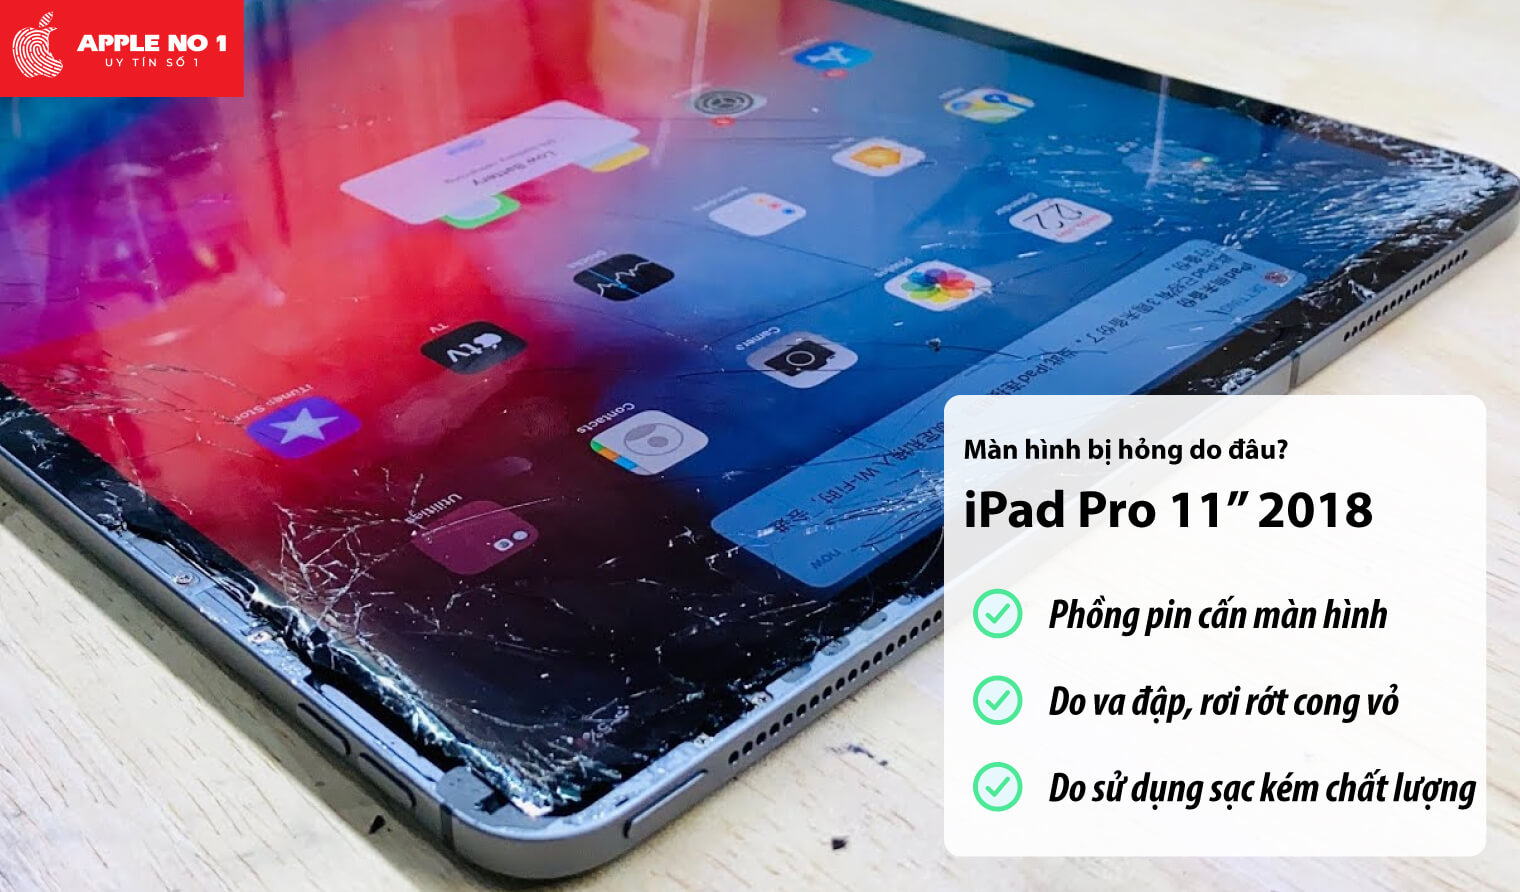 Màn hình iPad Pro 11 inch 2018 bị hỏng do đâu?